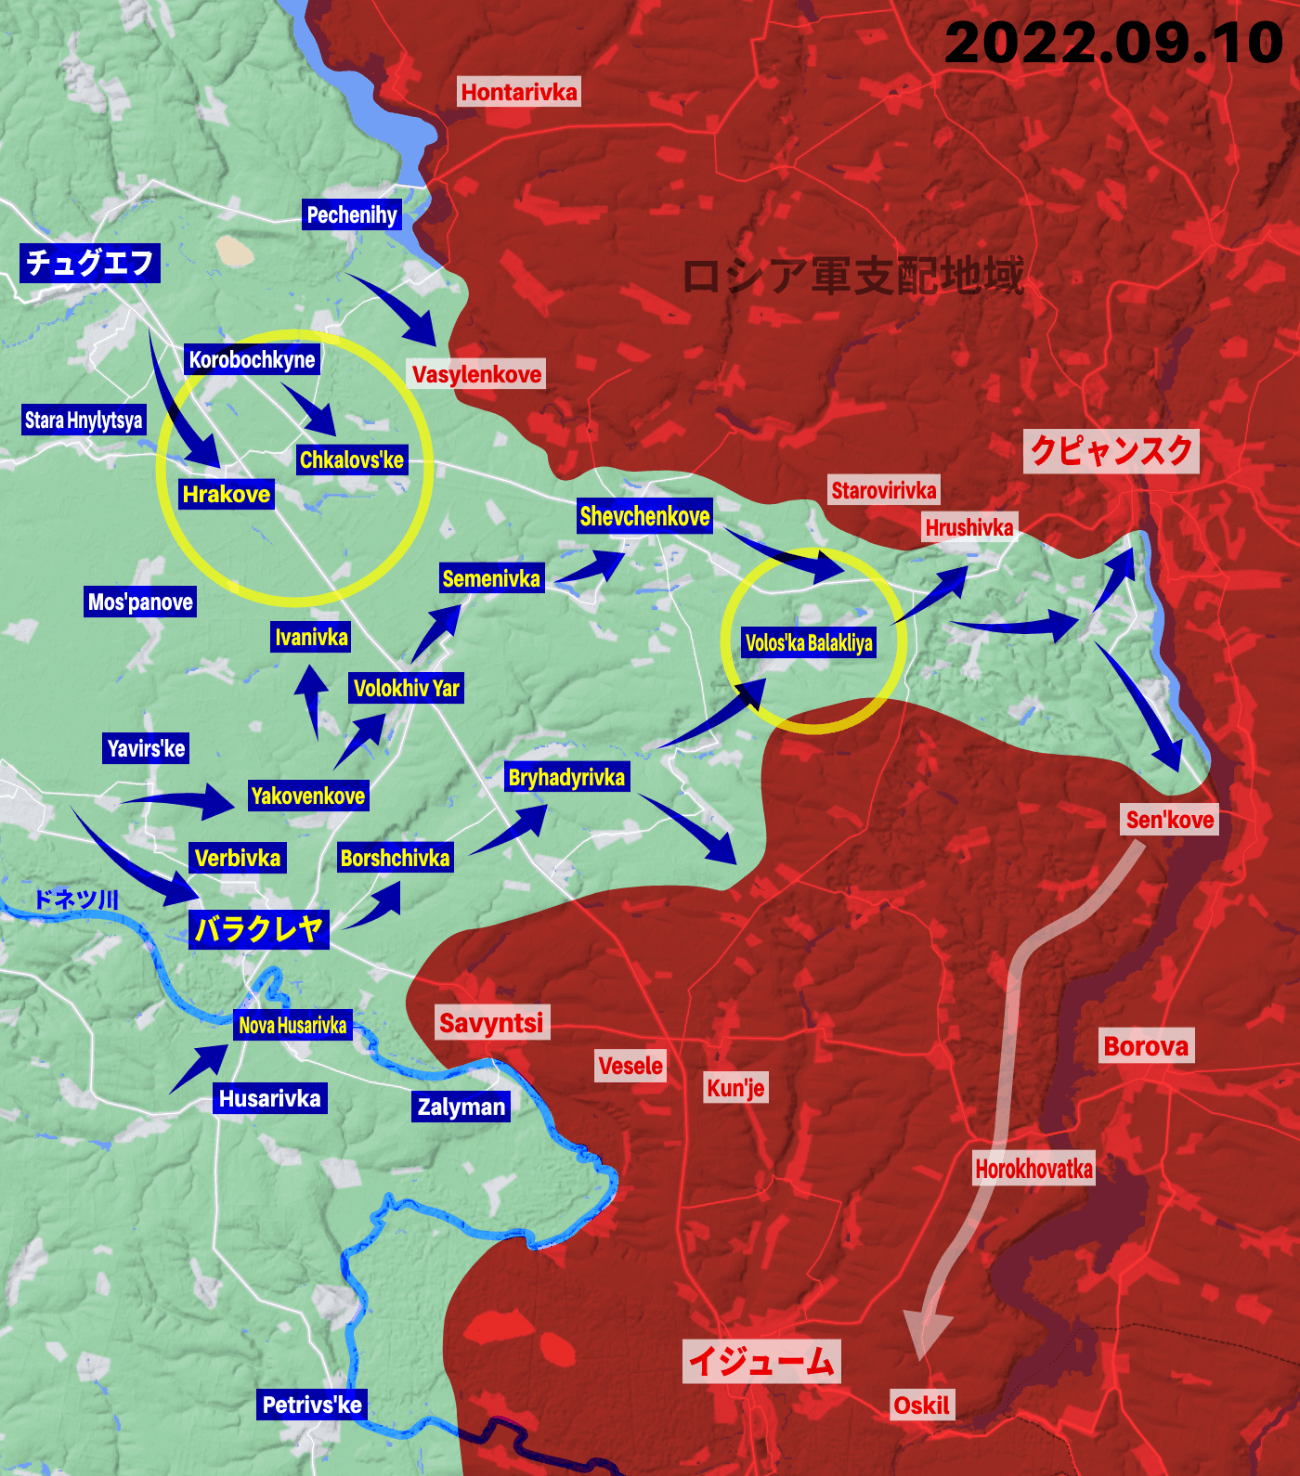 オスキル川沿いに南下するウクライナ軍、狙いはイジューム解放か